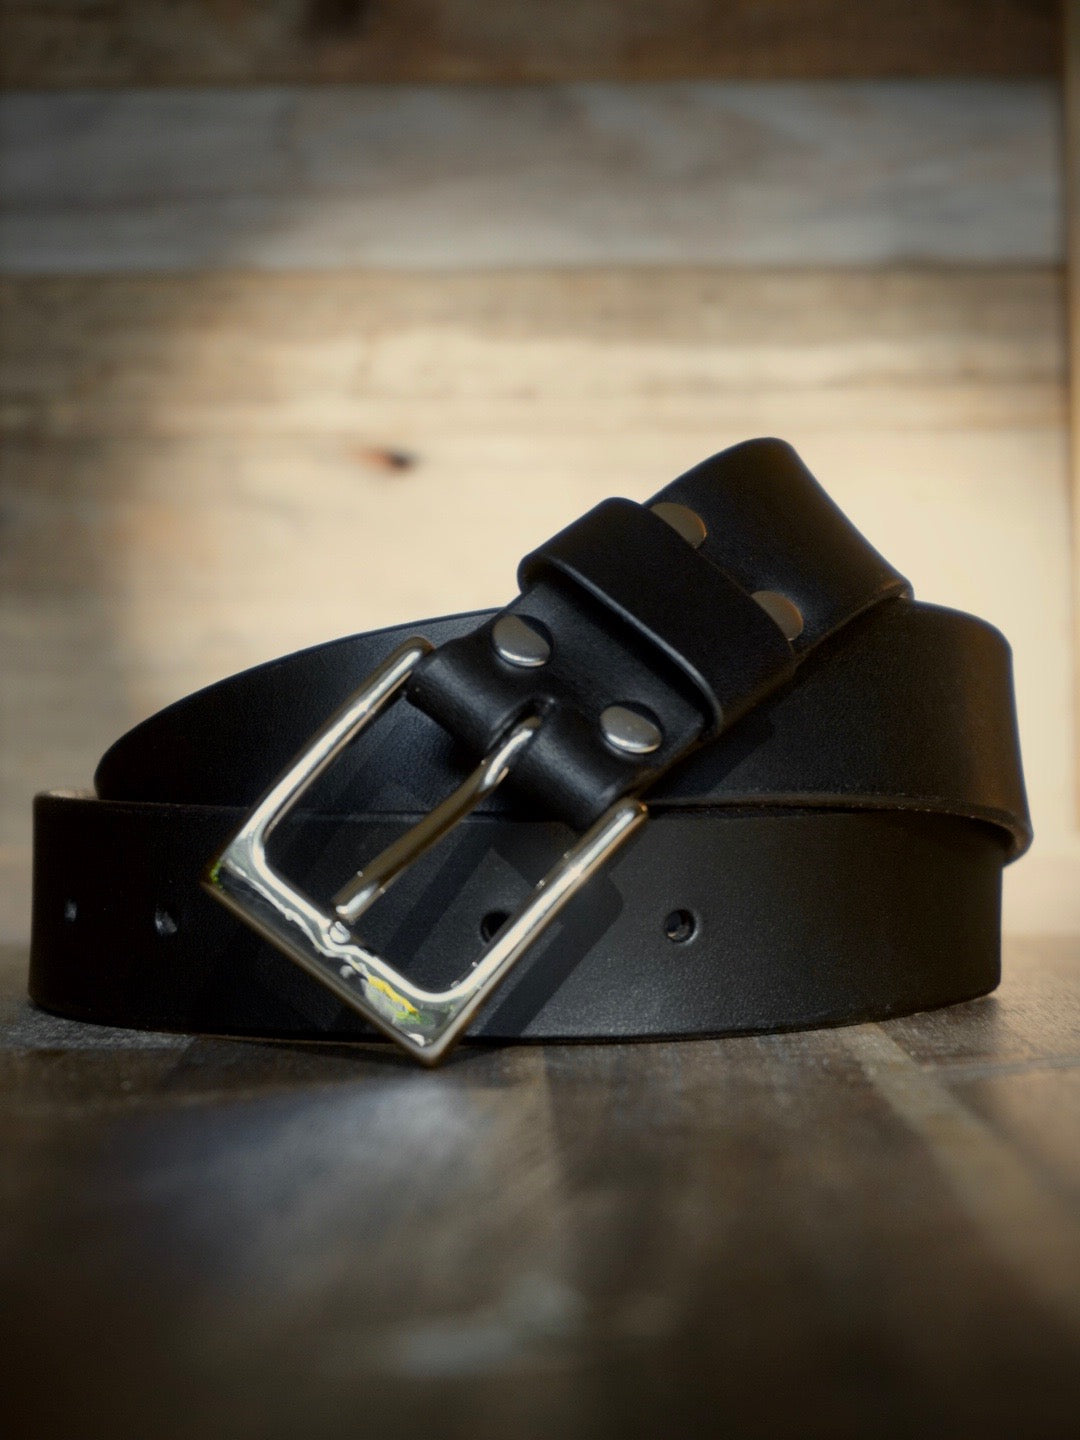 The Oak Belt (1 inch width)